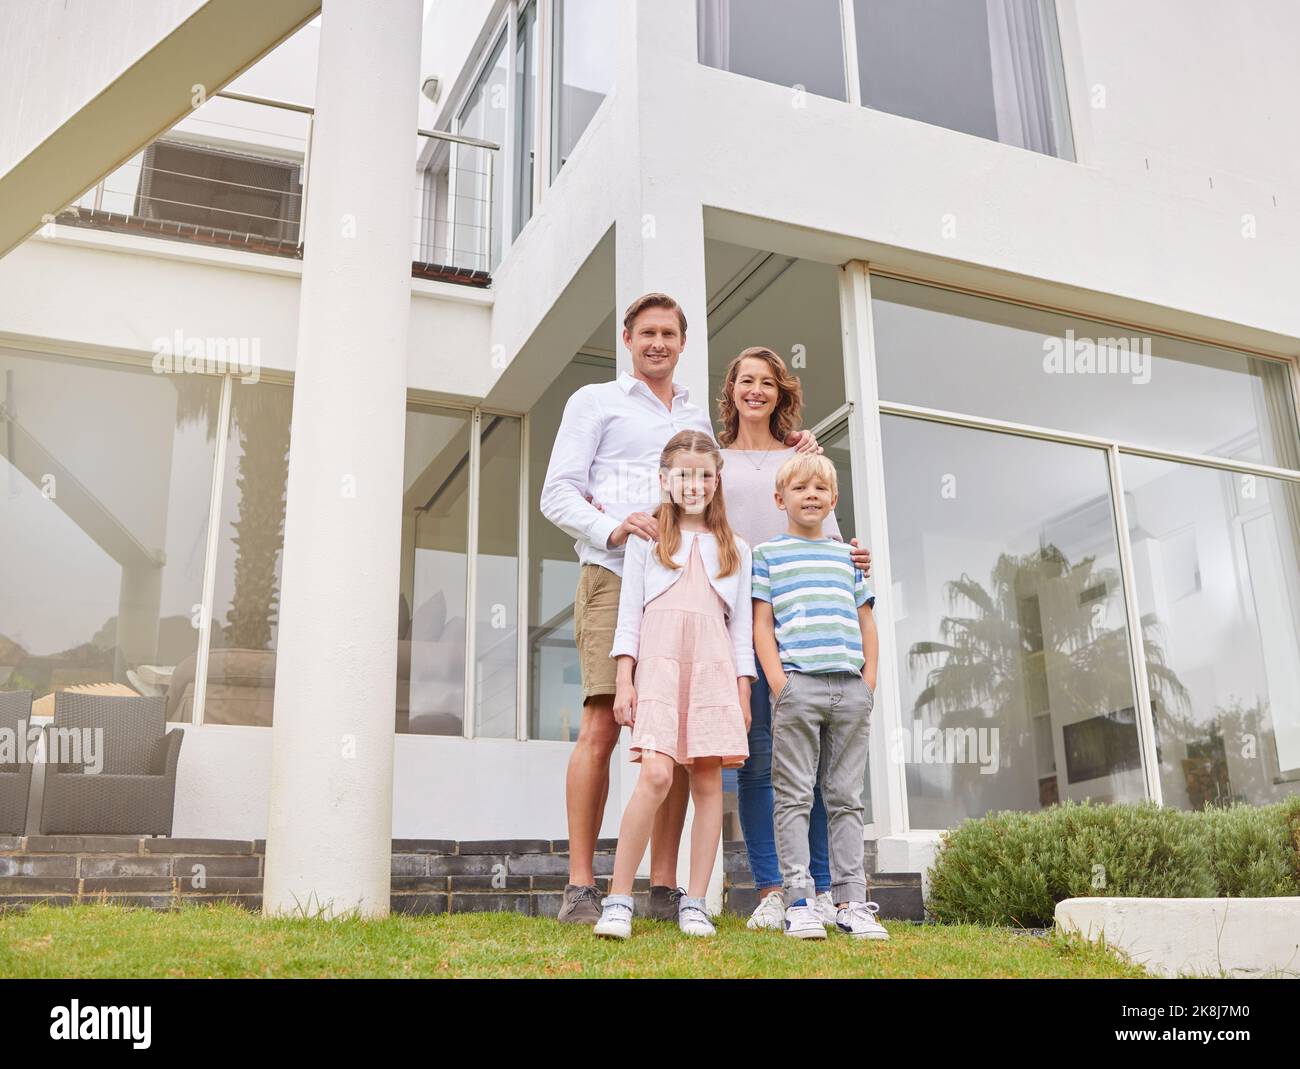 Mutter, Vater und Kinder in einem Immobilienhaus für ein glückliches Familienportrait und einen wohlhabenden Lebensstil im Freien. Mama, Papa und Kinder zusammen Stockfoto